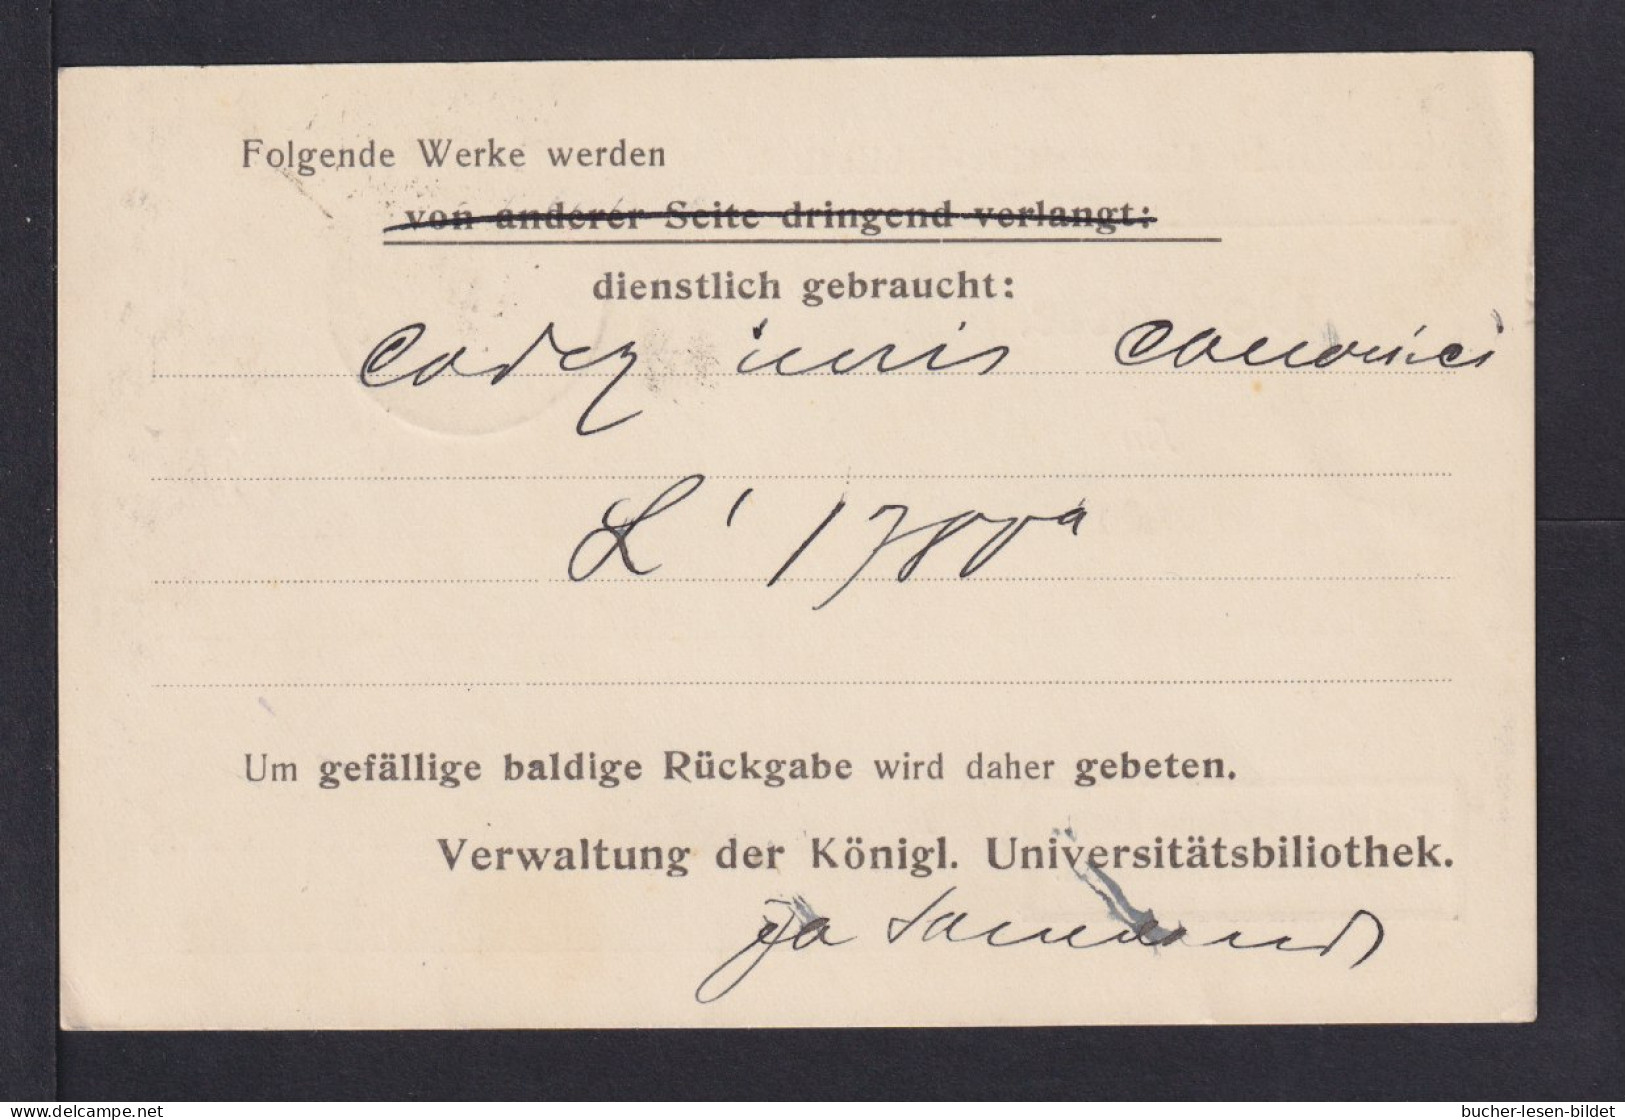 BILDUNG - 1919 - Protofreie Dienstkarte "Universität Münster" - Gebraucht - Natur